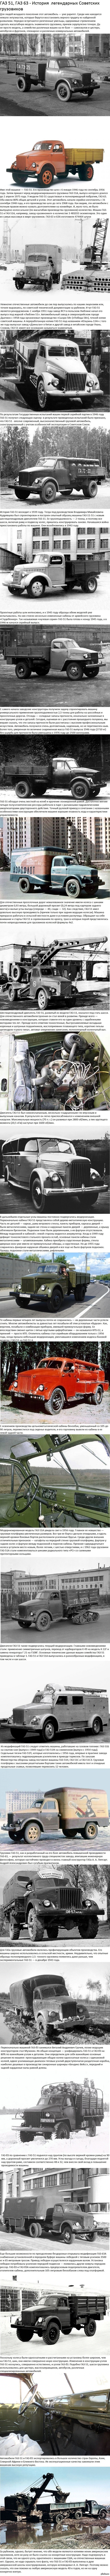         http://fishki.net/auto/1215811-gaz-51-gaz-63---istorija-samyh-legendarnyh-sovetskih-gruzovikov.html